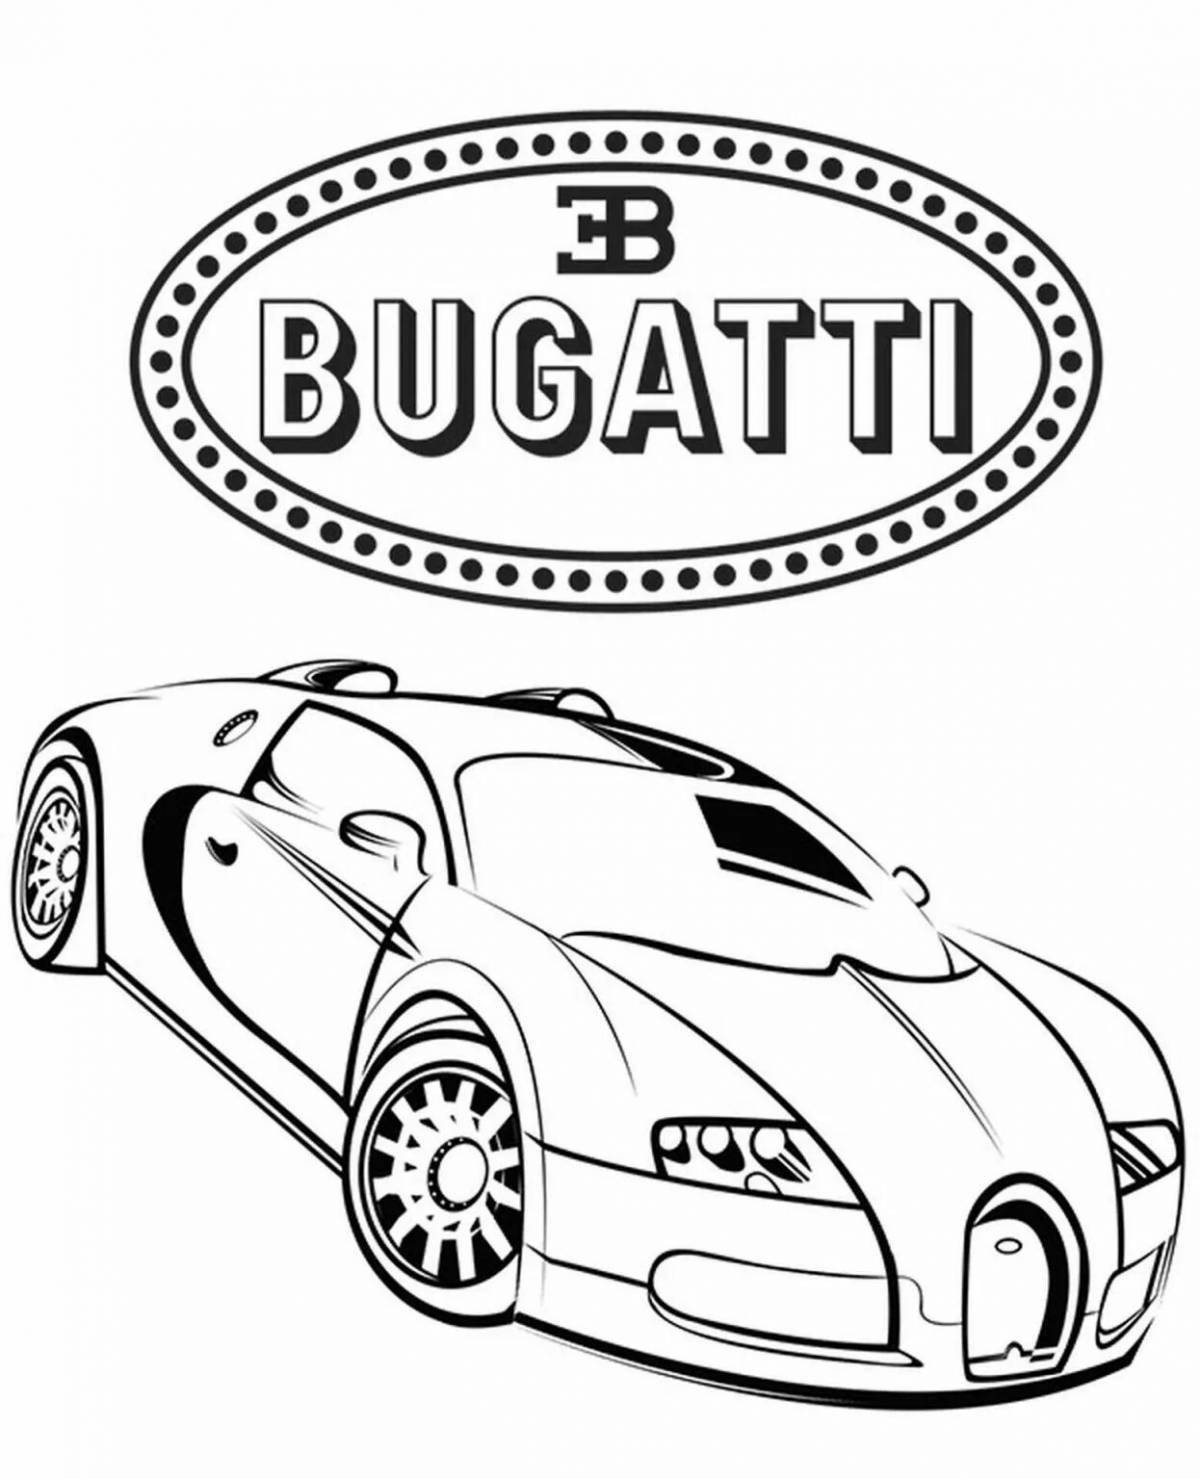 Bugatti shiny car coloring page